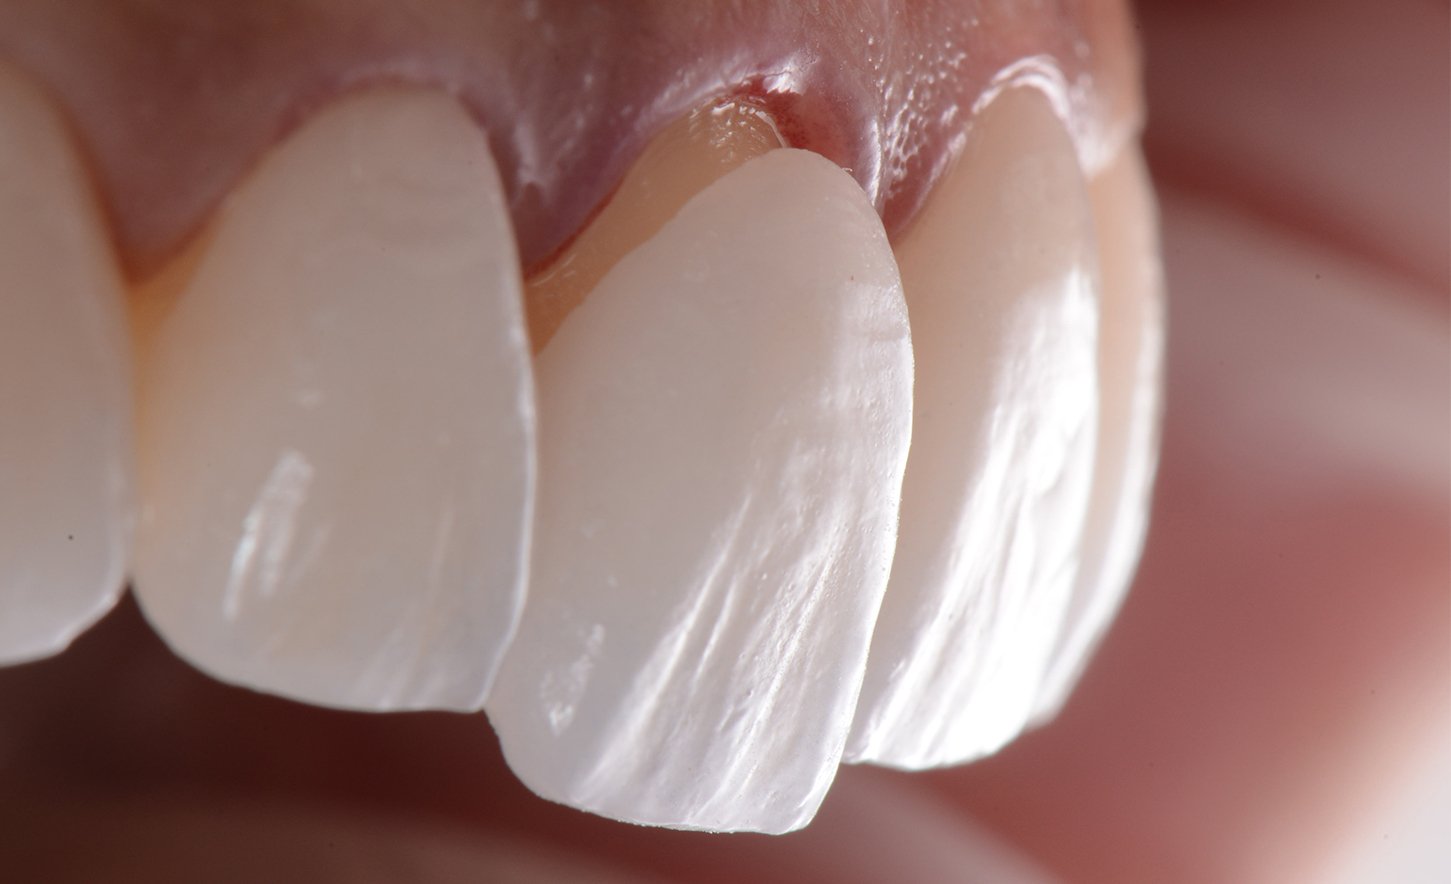 Laminate Veneer Diş Kaplamaları: Mükemmel Gülüşün Sırrı